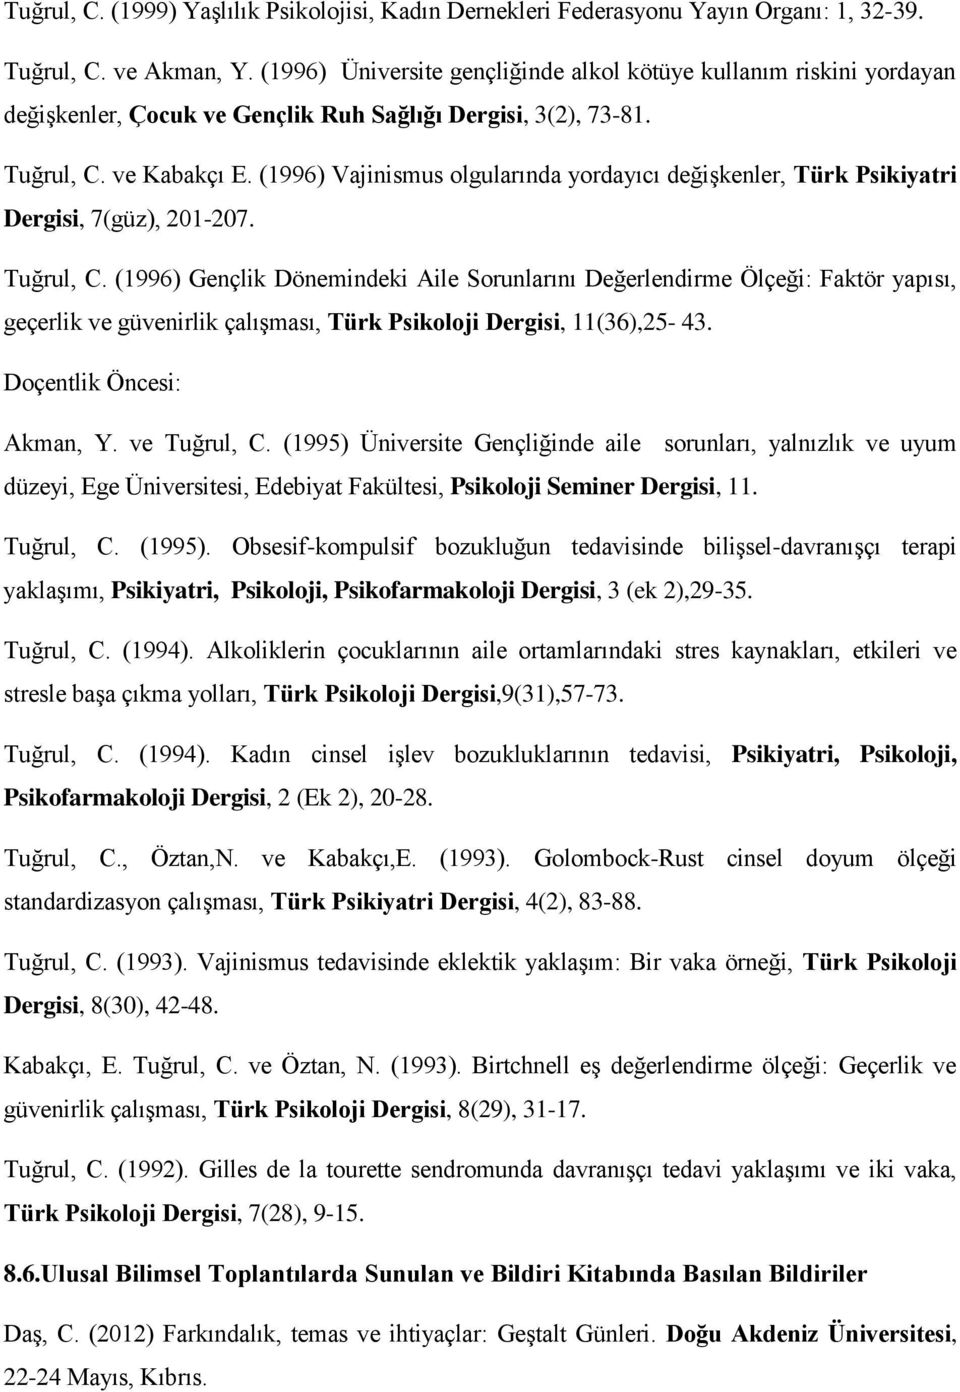 (1996) Vajinismus olgularında yordayıcı değişkenler, Türk Psikiyatri Dergisi, 7(güz), 201-207. Tuğrul, C.